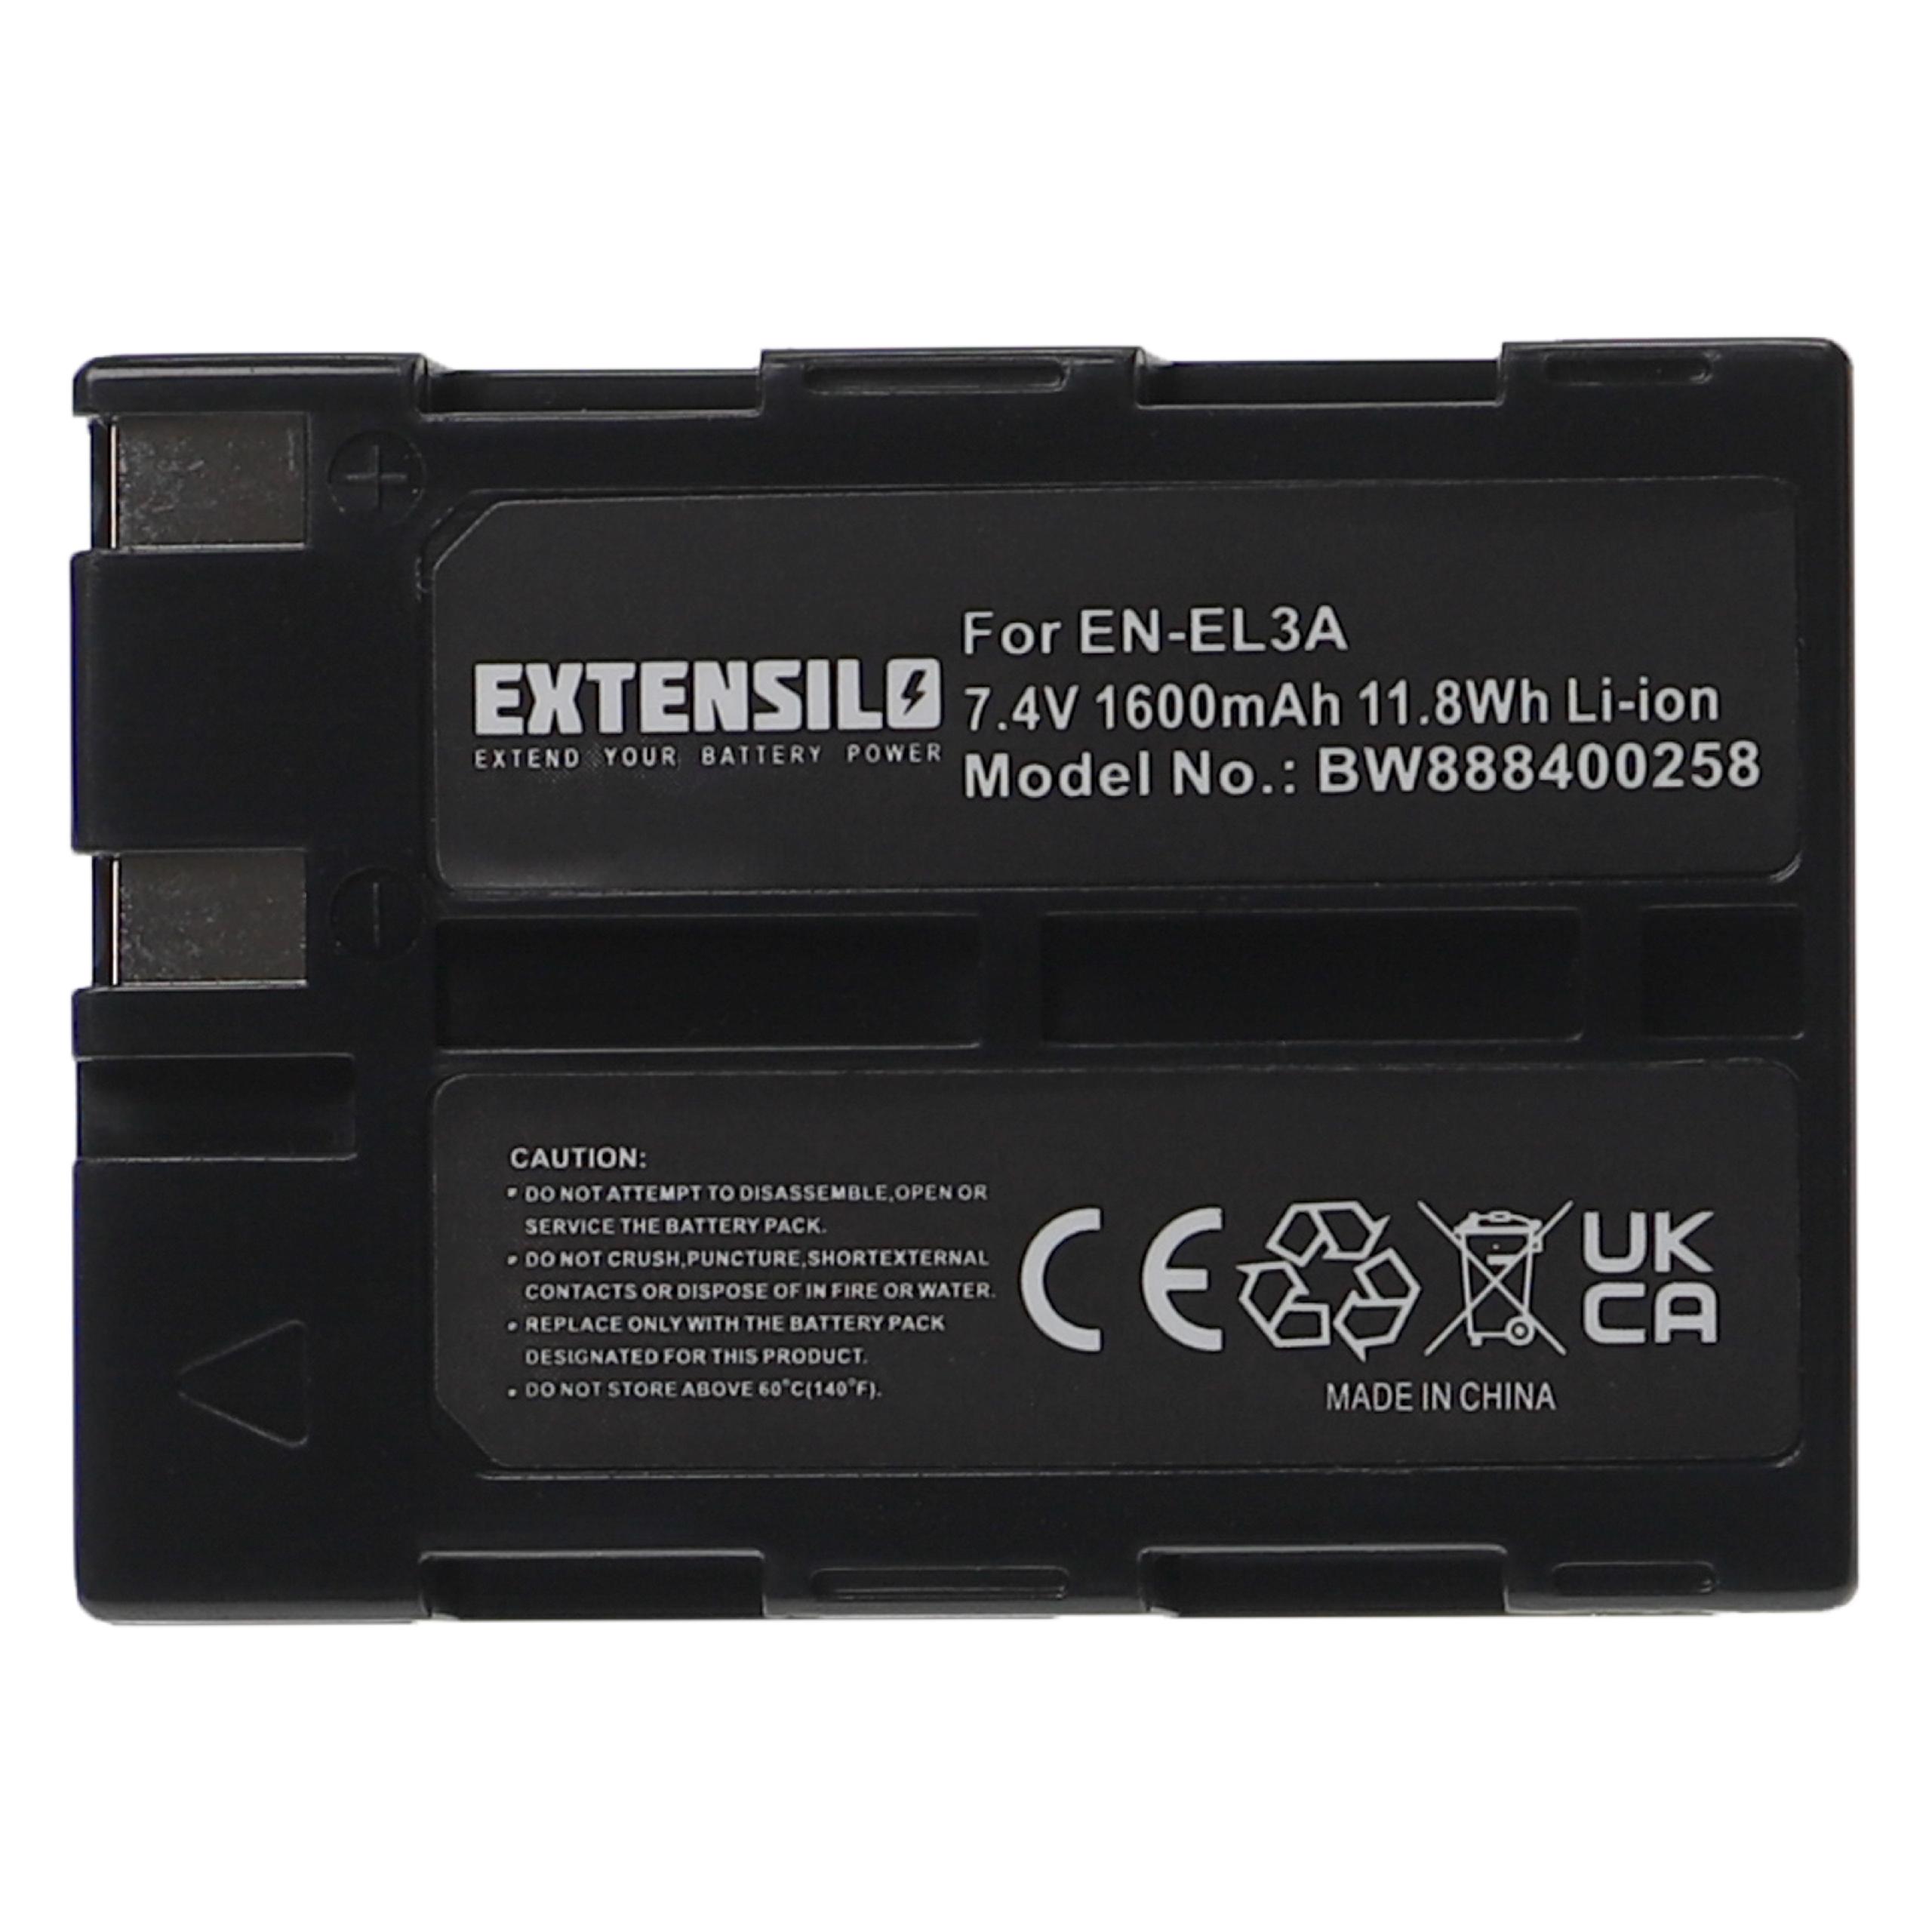 Batterie remplace Nikon EN-EL3, EN-EL3a pour appareil photo - 1600mAh 7,4V Li-ion